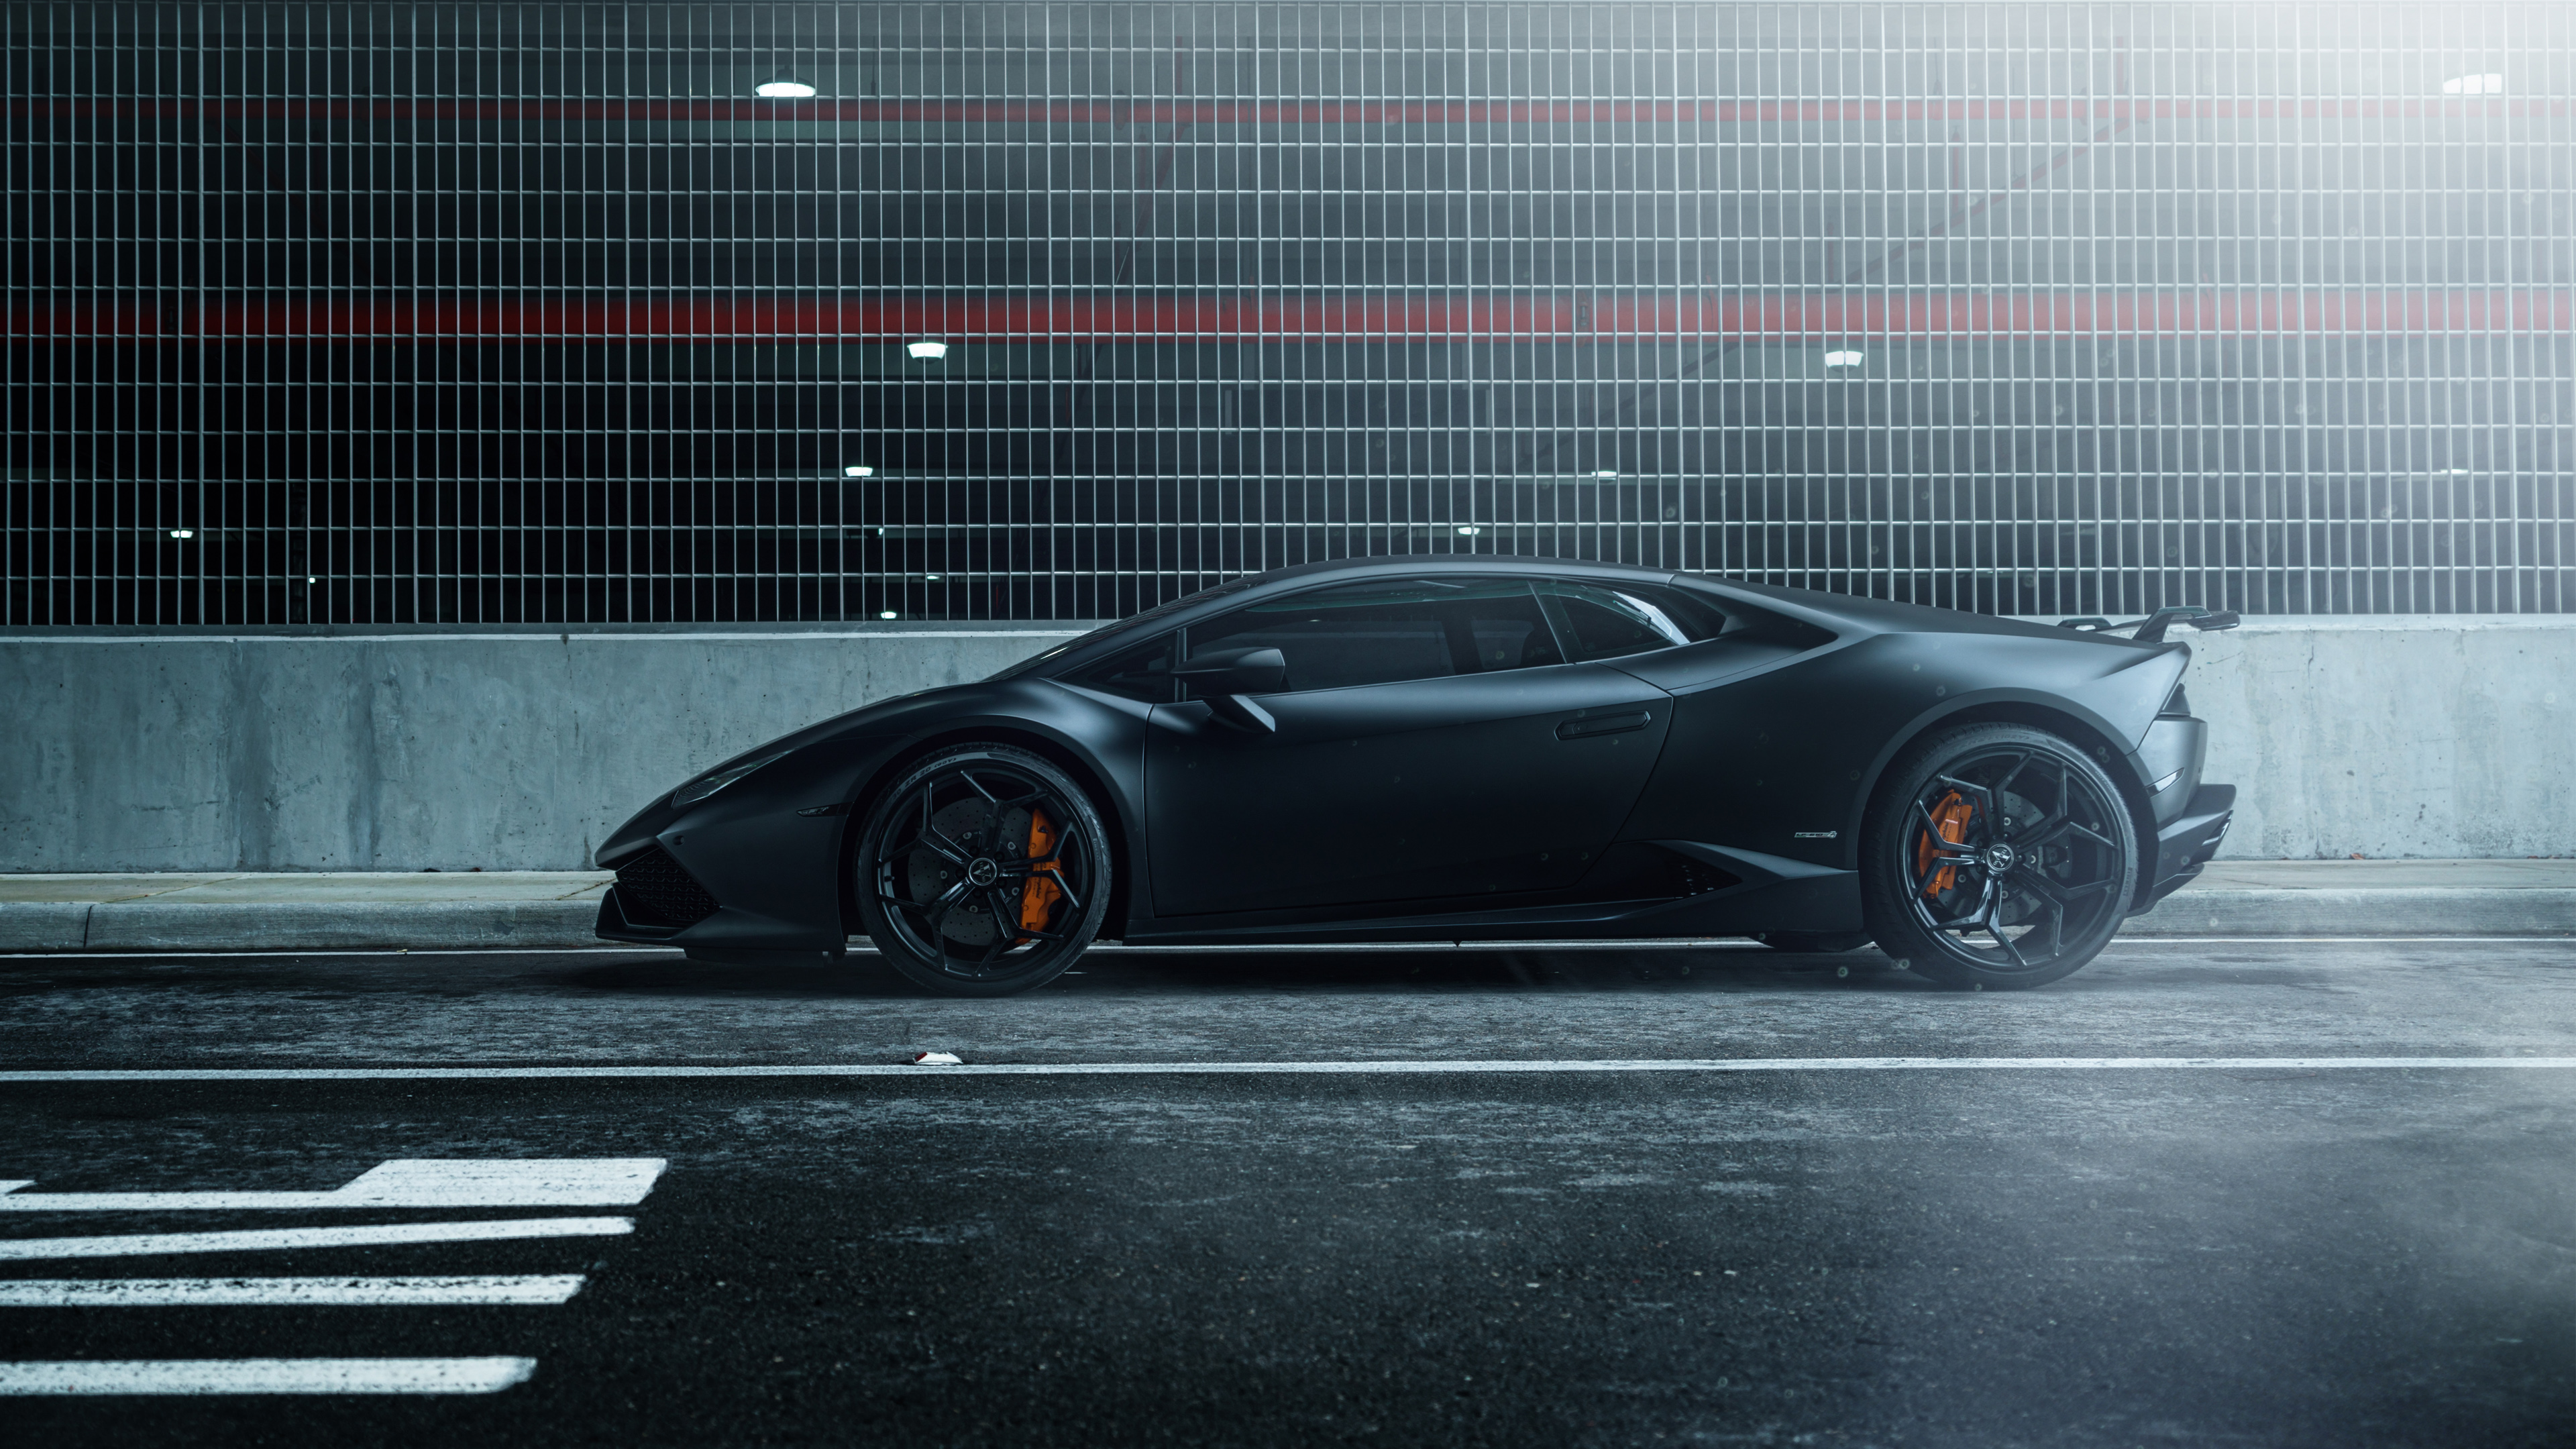 Lamborghini Huracan Wallpaper For Android